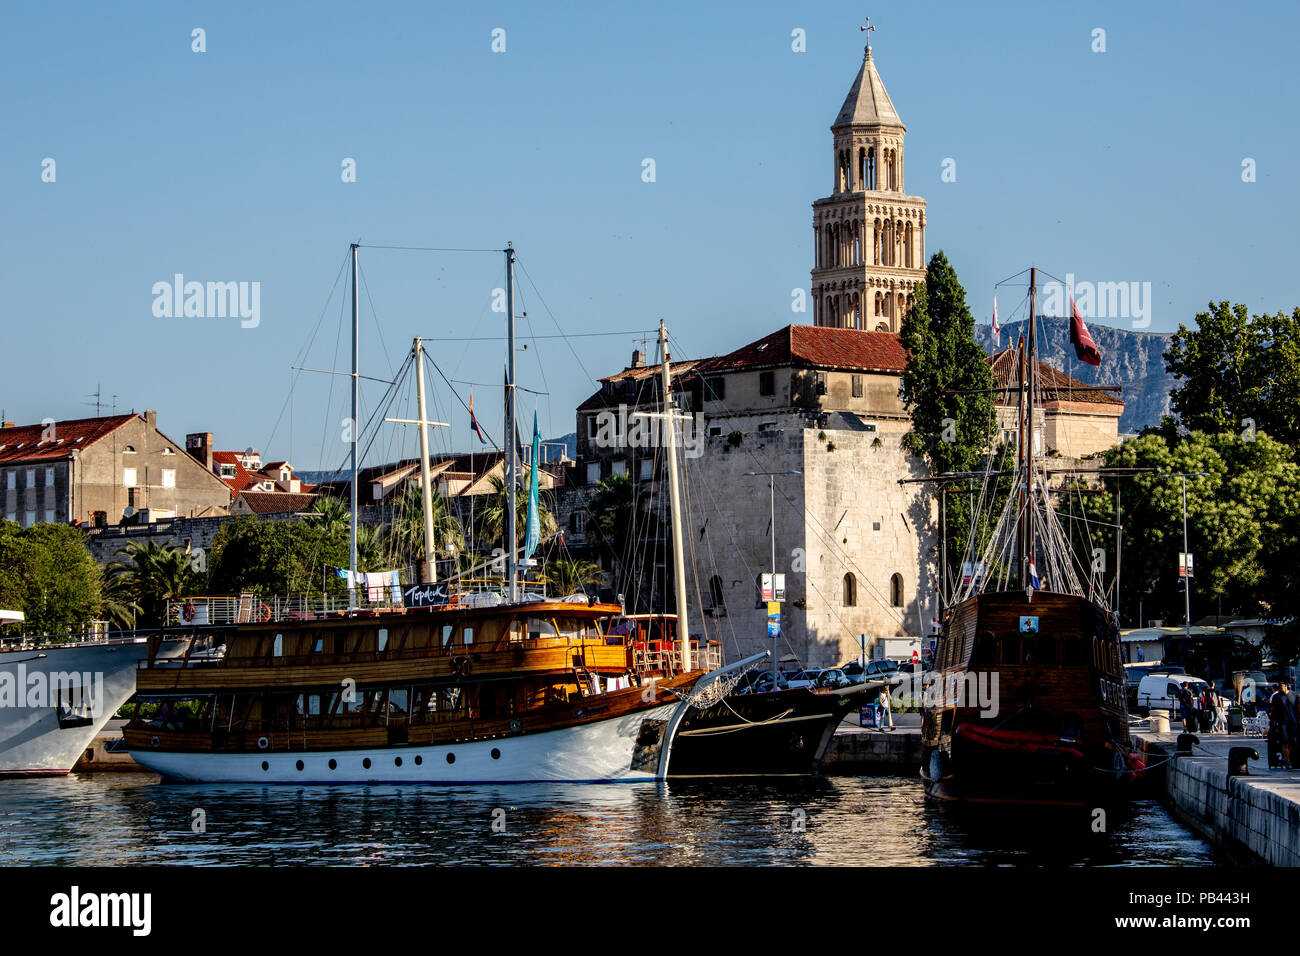 Old Split, the Historic Center of Split, Croatia Stock Photo